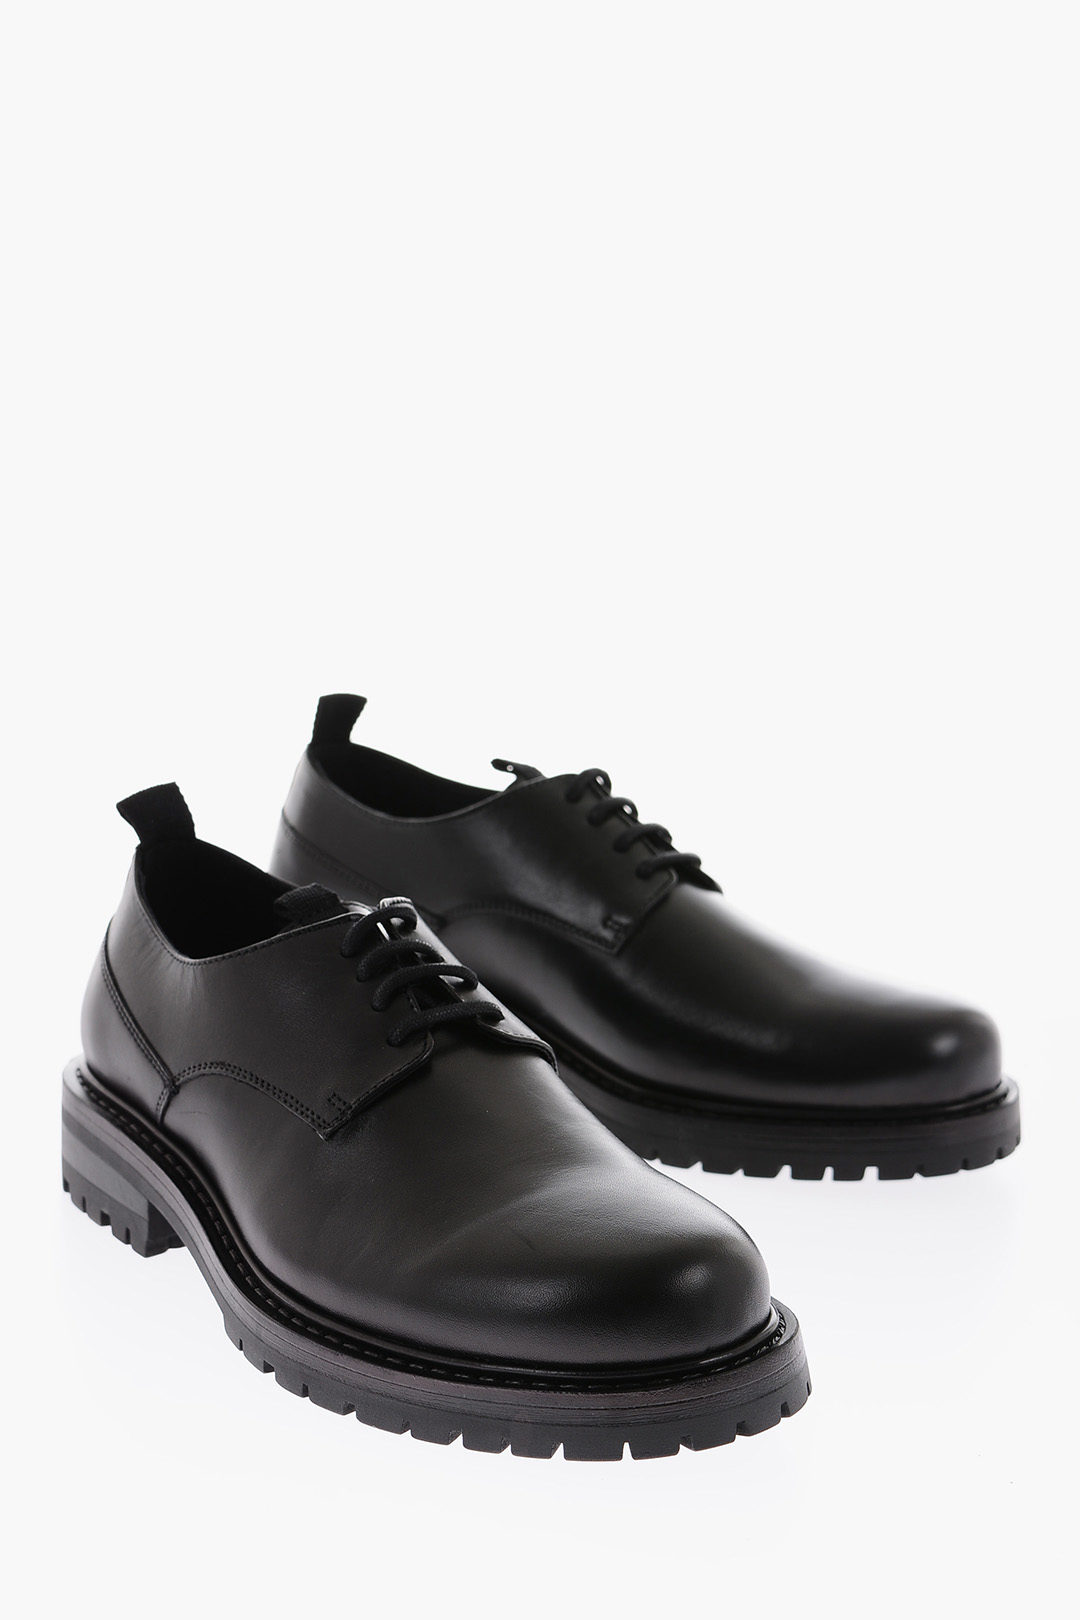 Samsoe Samsoe solid color leather FIRO Derby shoes men - Glamood Outlet